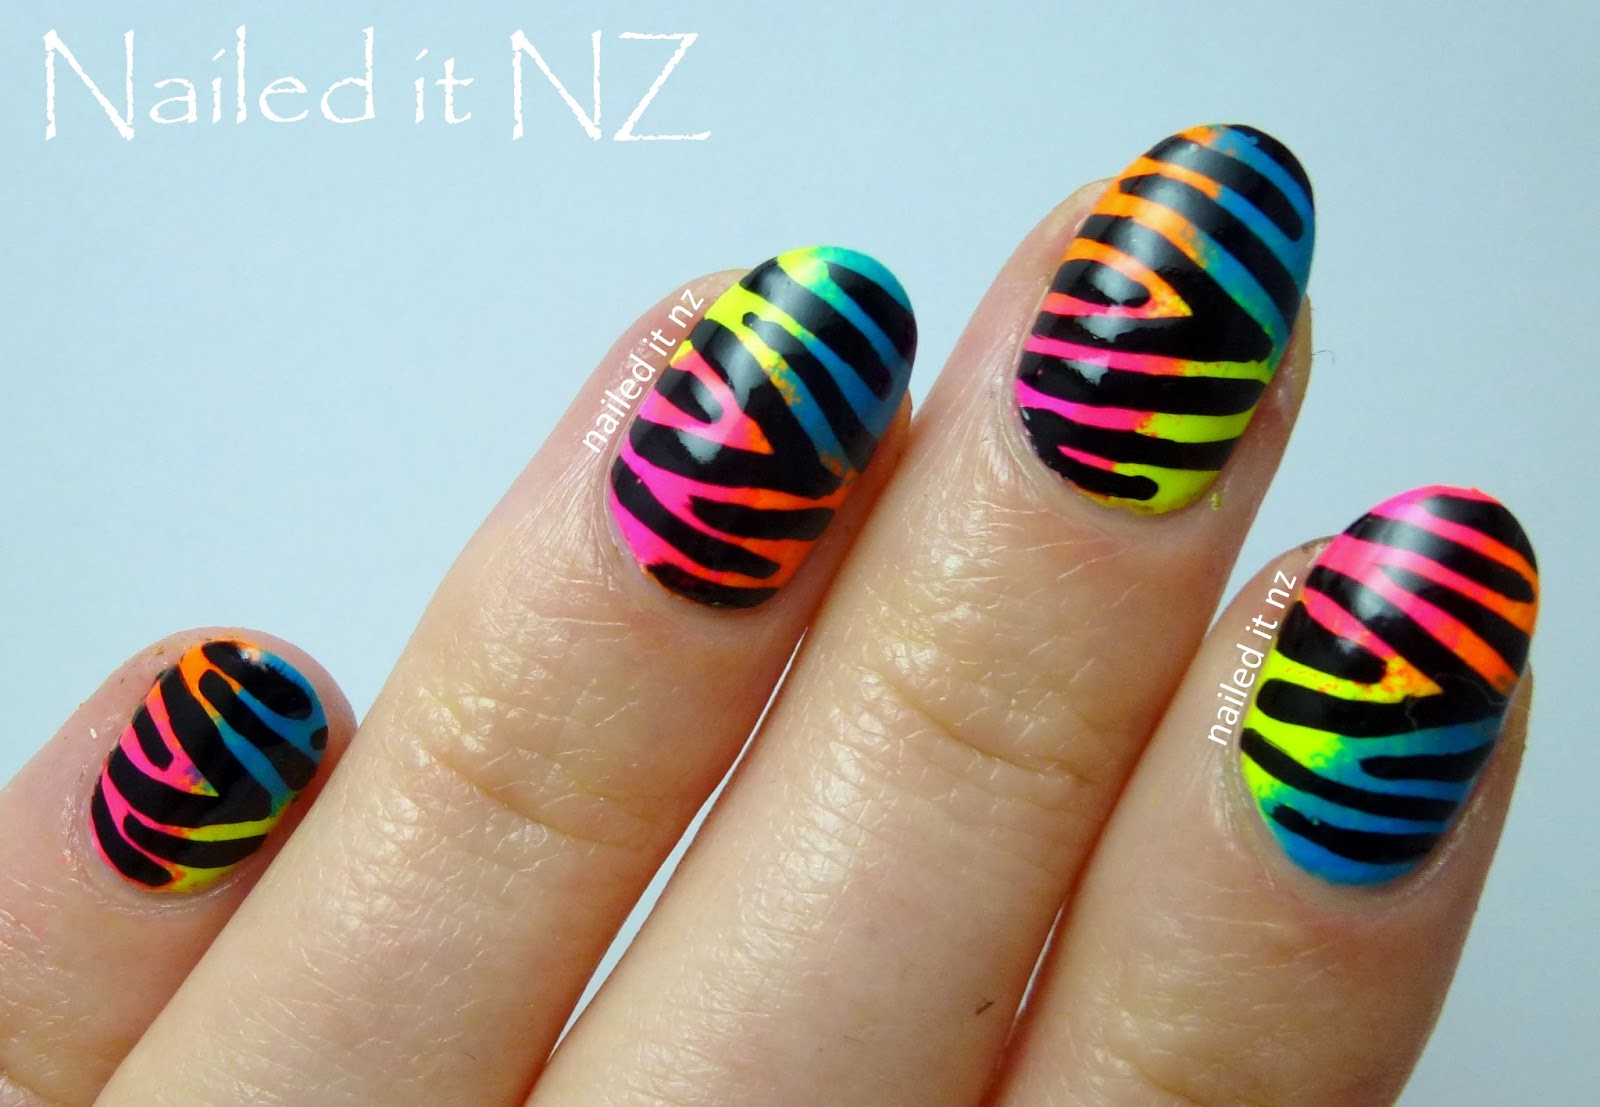 motif zebra nail art